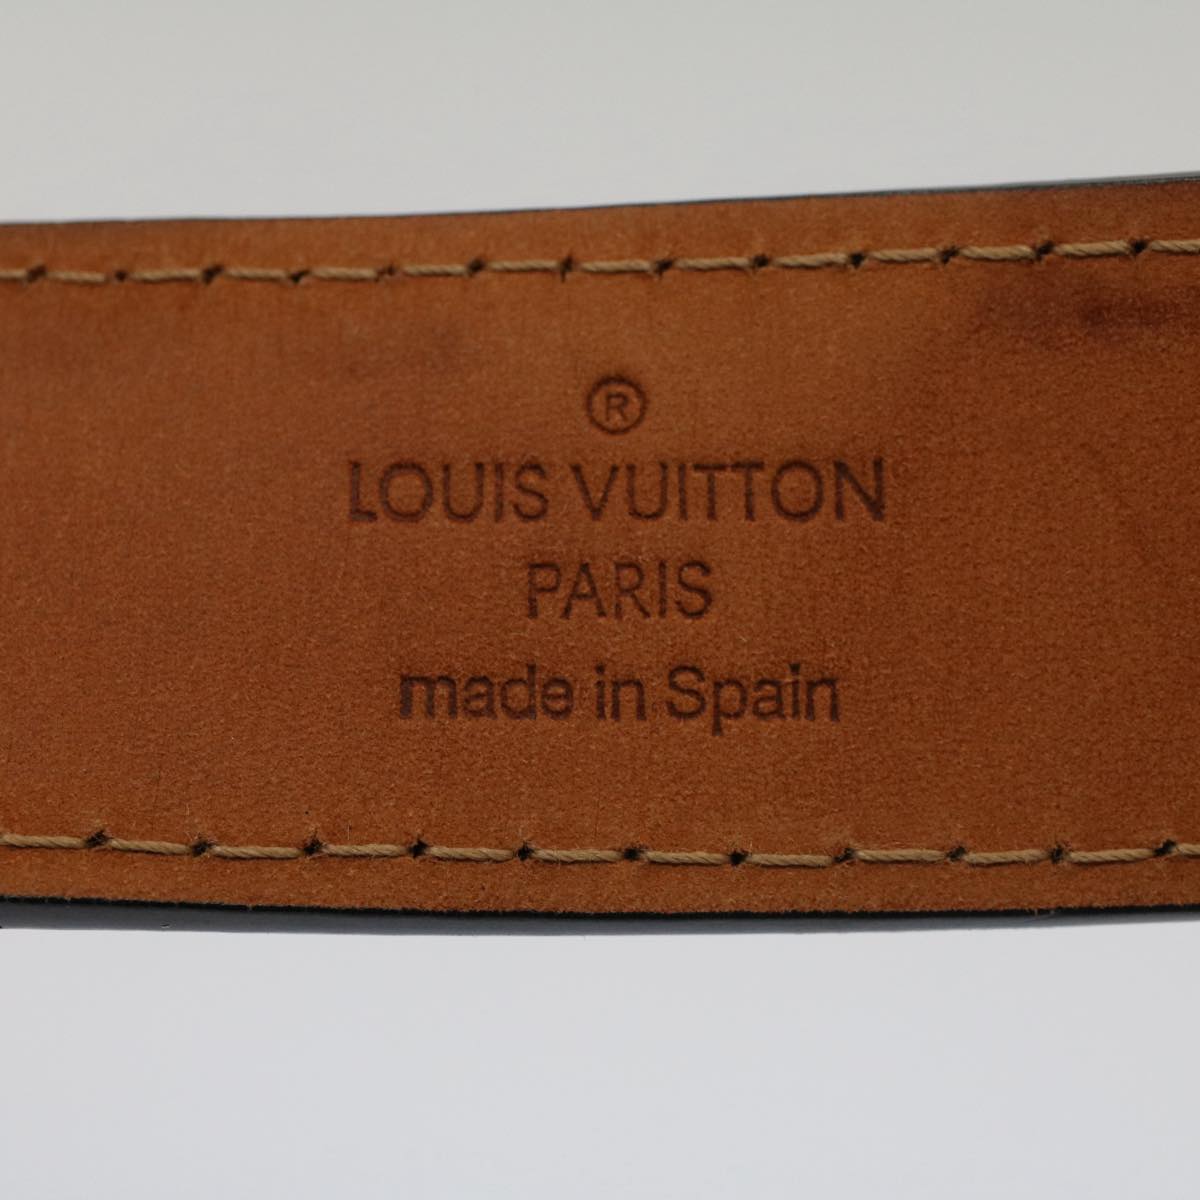 LOUIS VUITTON Ceinture jeans Belt Leather 29.5""-33.5"" Black M6812 Auth ki3398